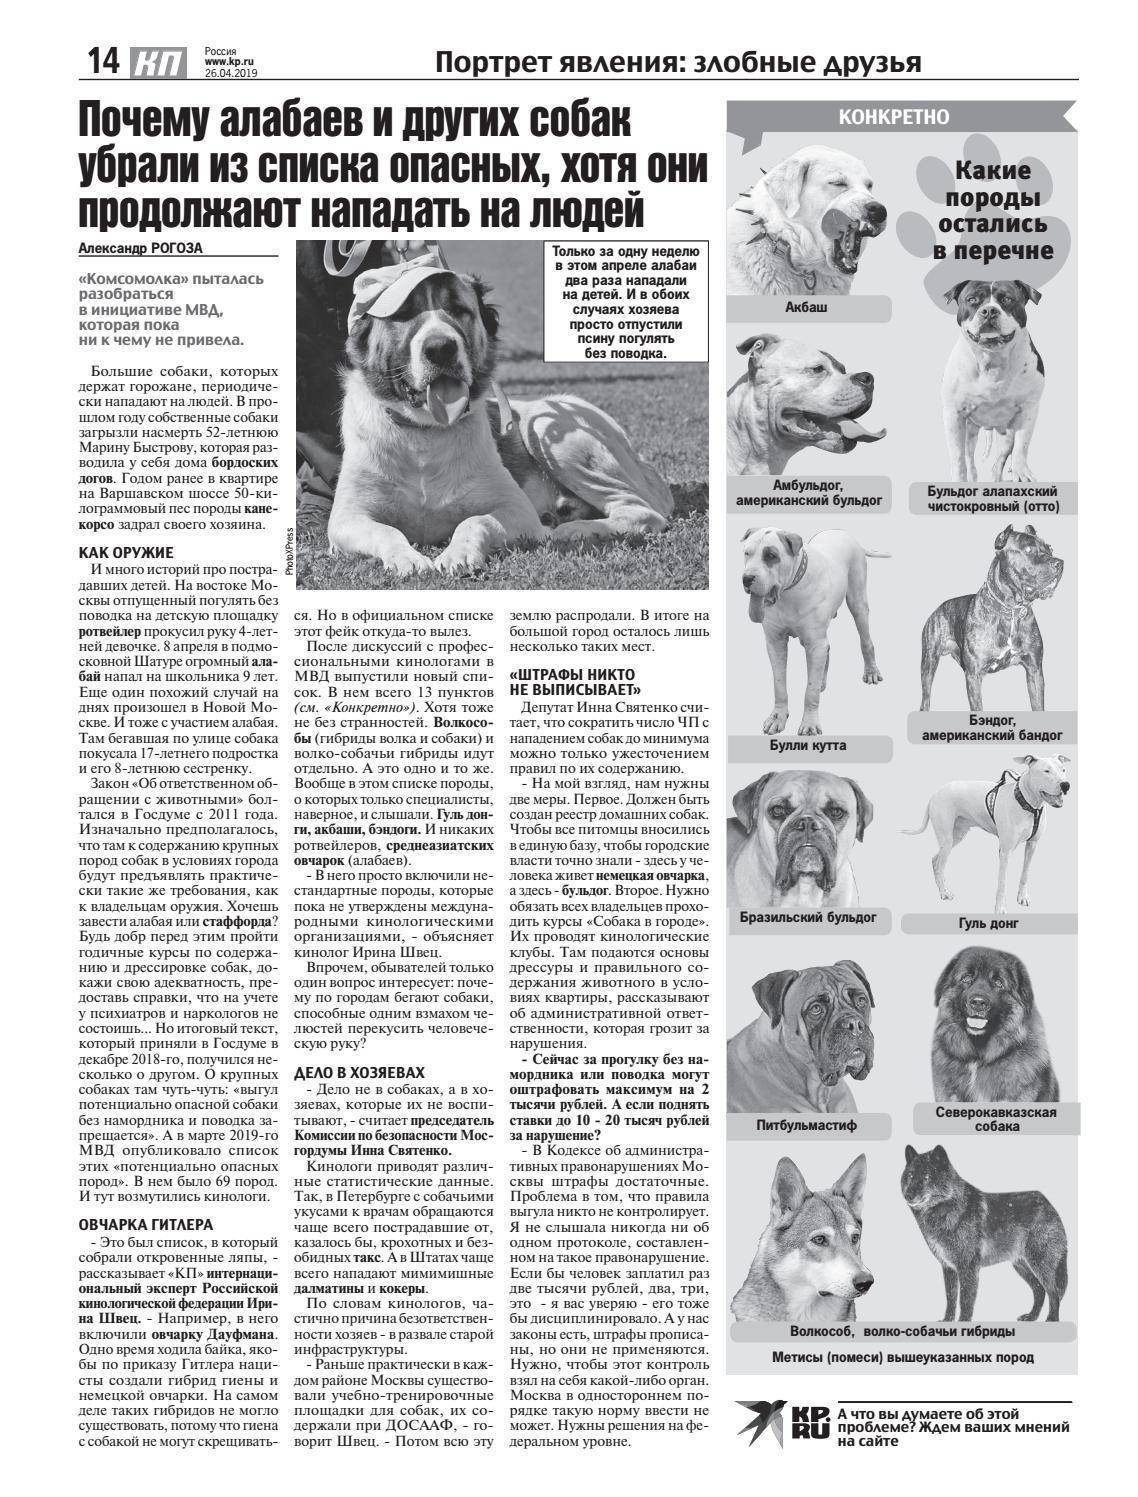 Потенциально опасные собаки 2023. Список опасных пород собак 2021. Список опасных собак запрещенных в России. Список потенциально опасных пород собак в России 2021. Опасные породы собак список в РФ 2021.